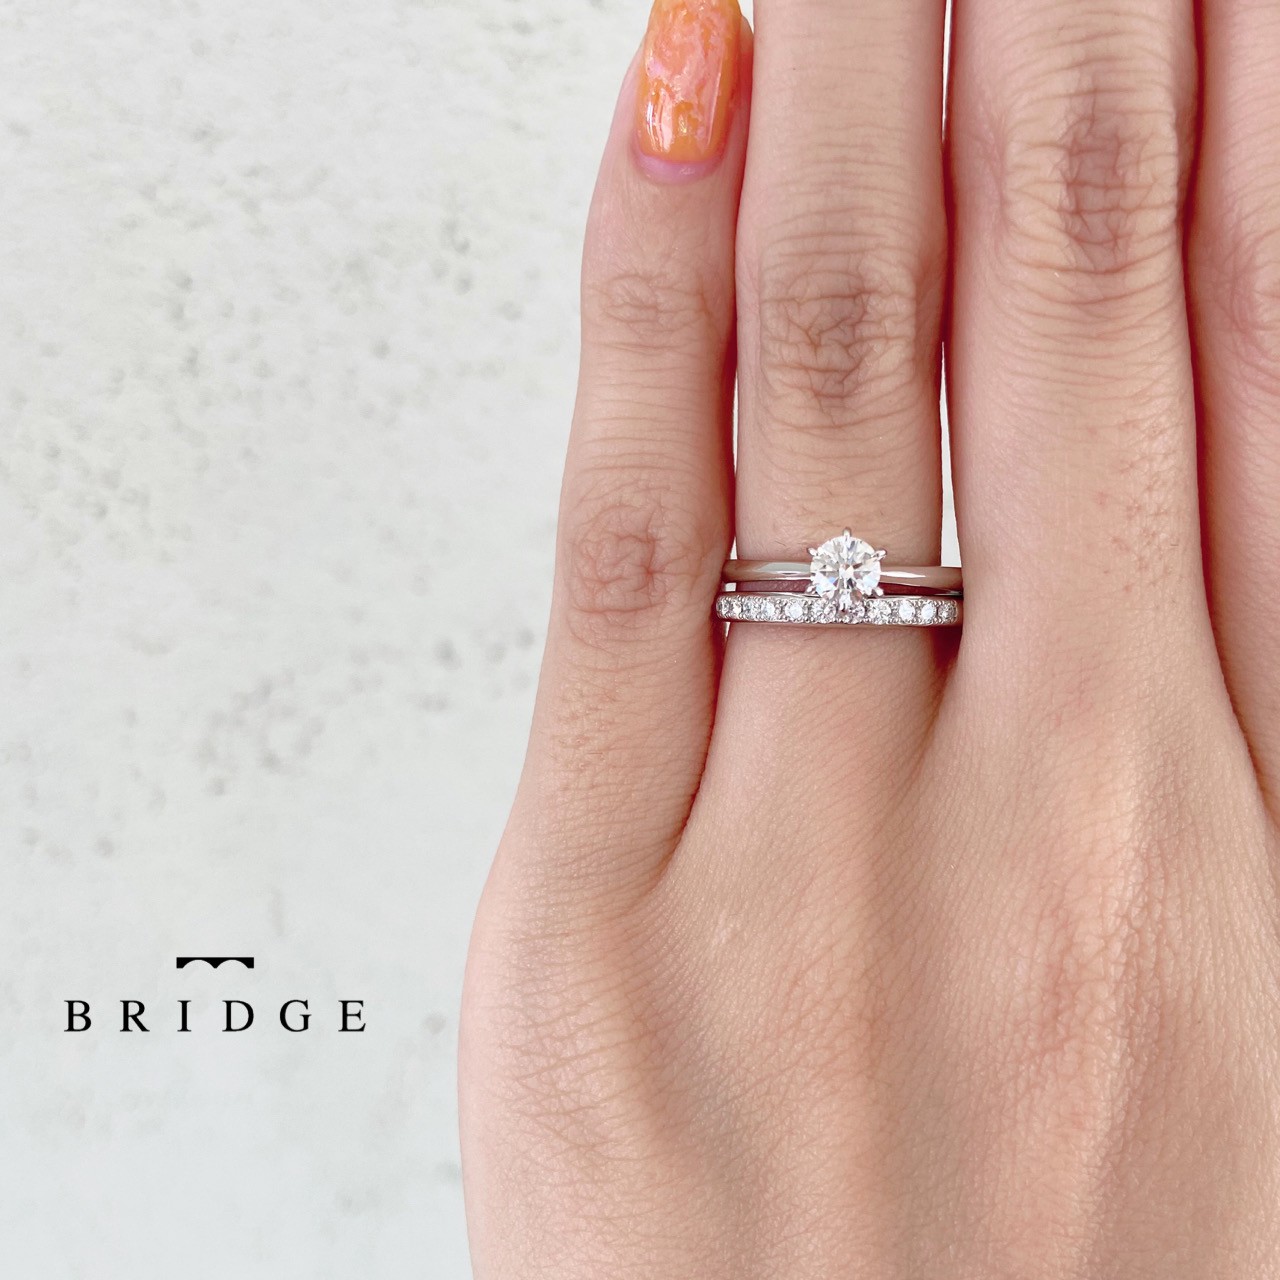 プロポーズにぴったりの意味の婚約指輪「BRIDGE」”一輪の薔薇”